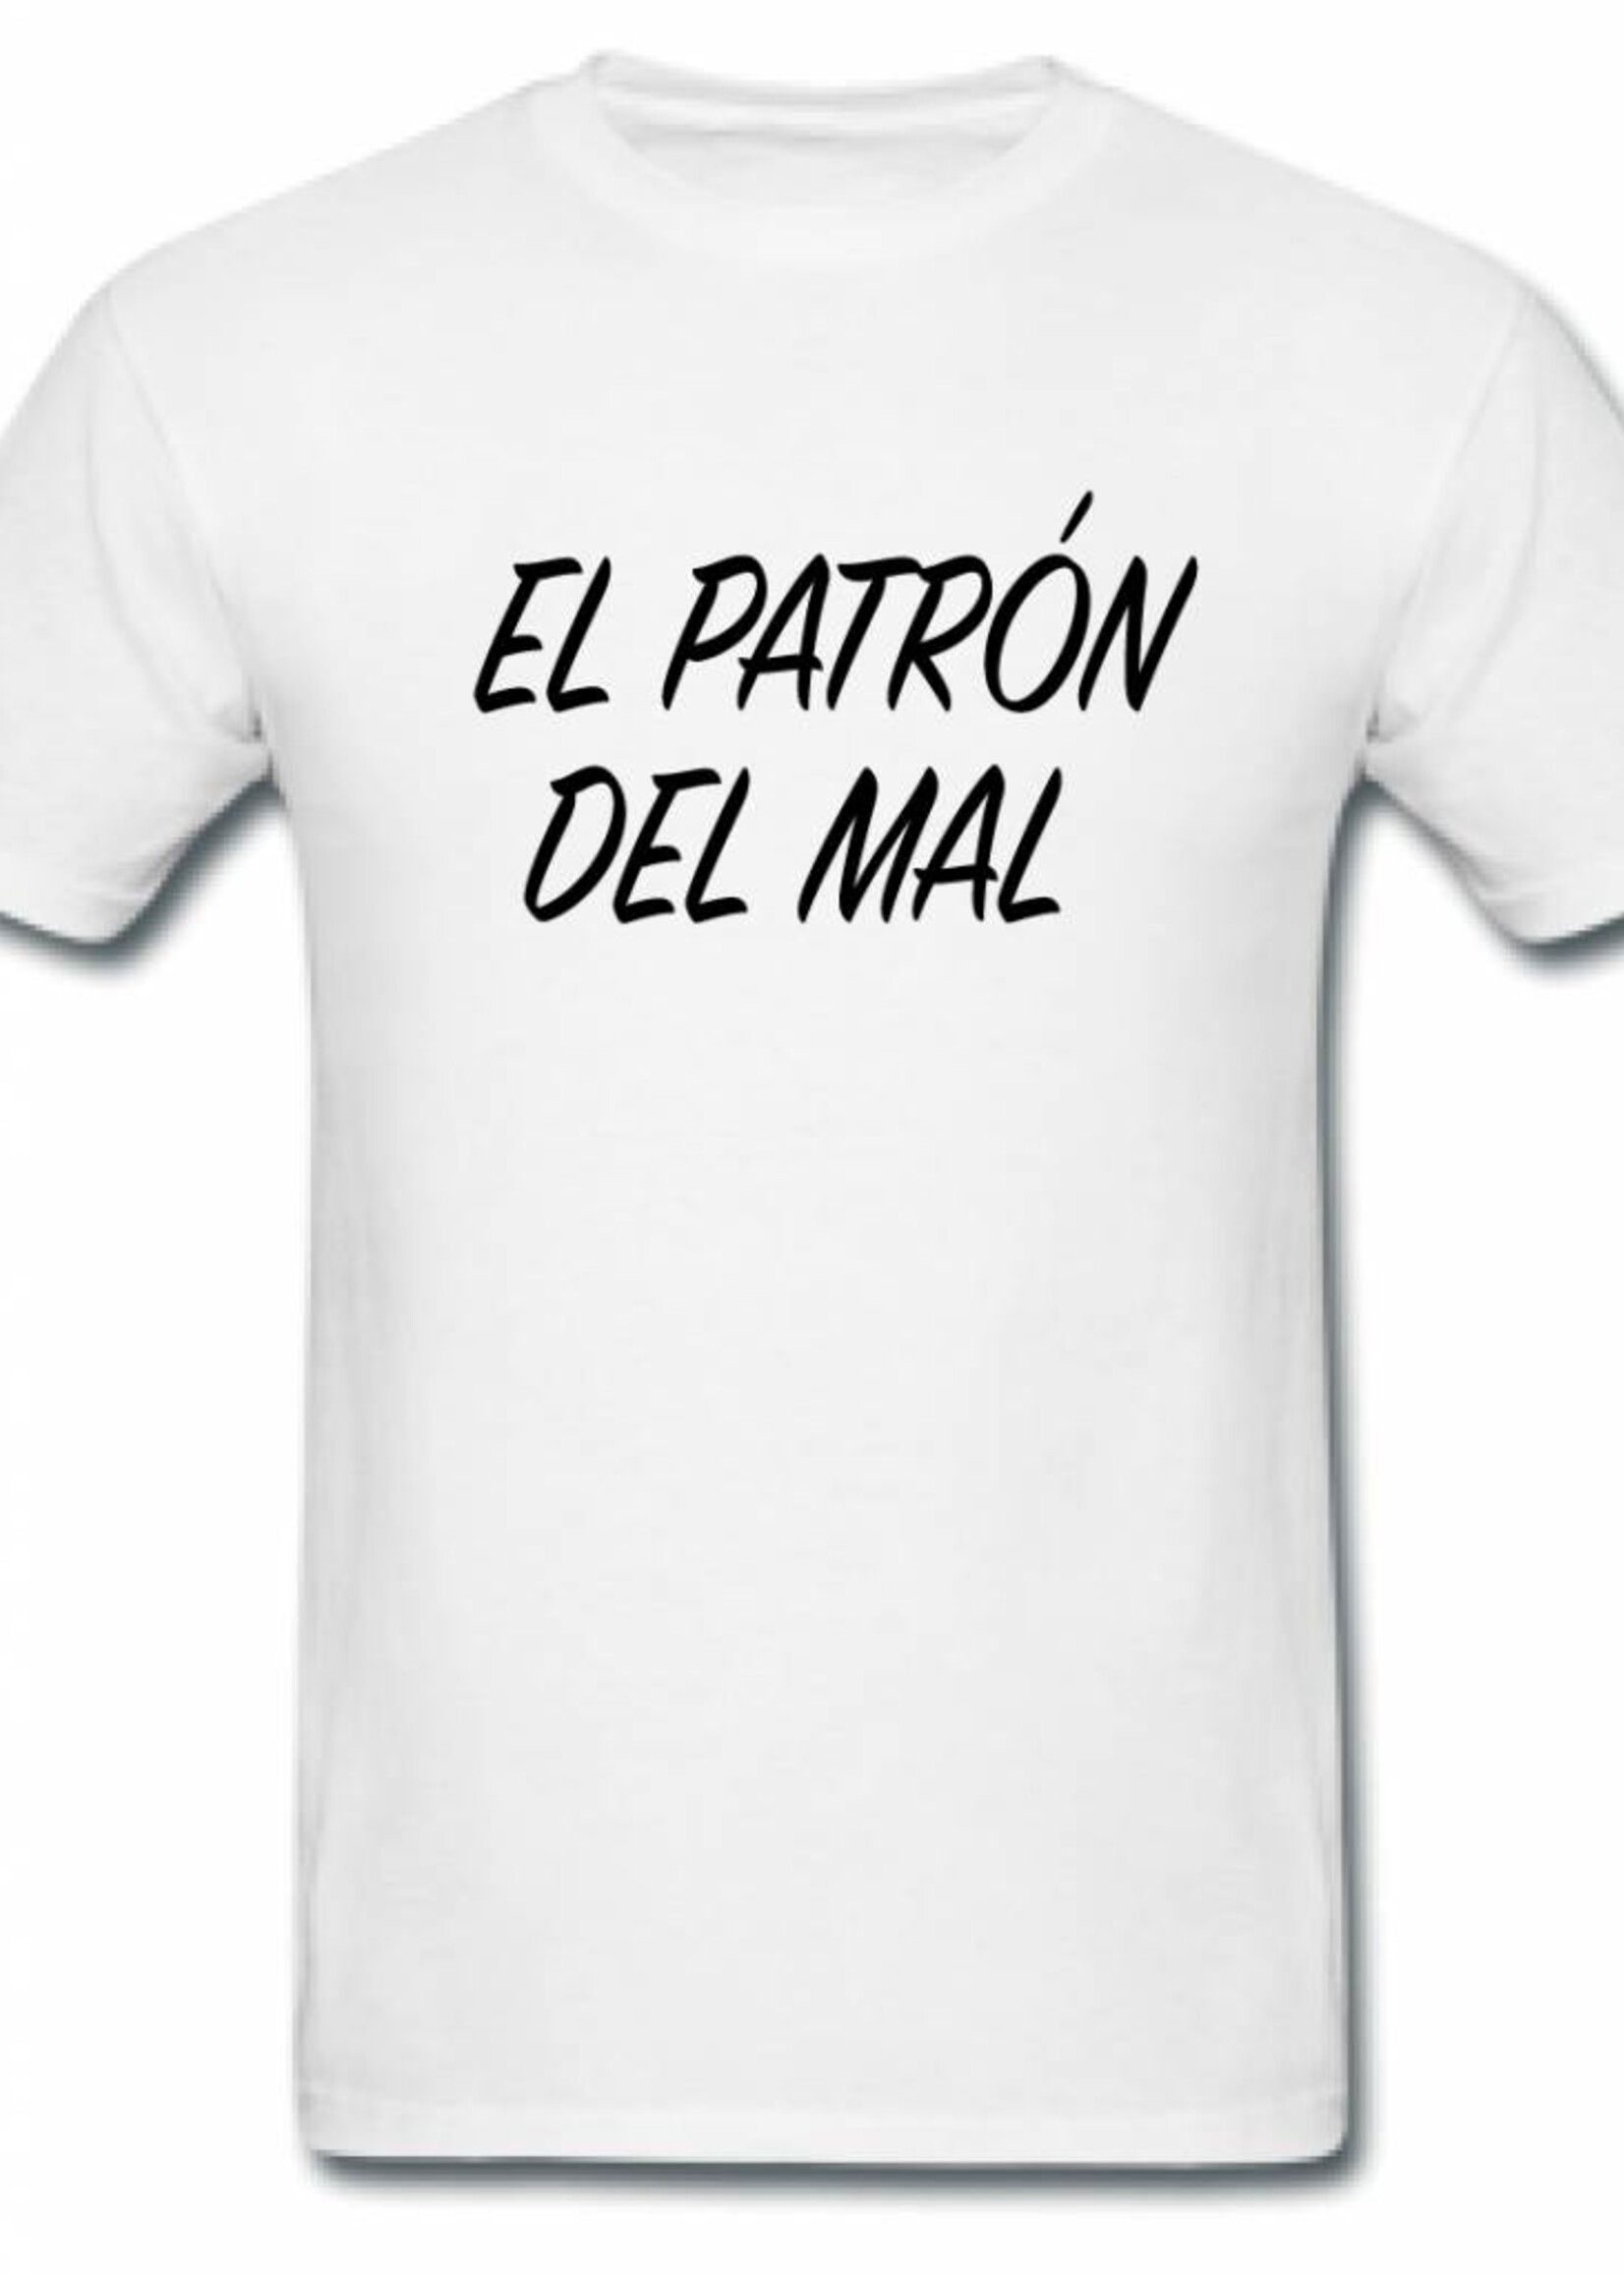 EL PATRON DEL MAL TEE (MEN)